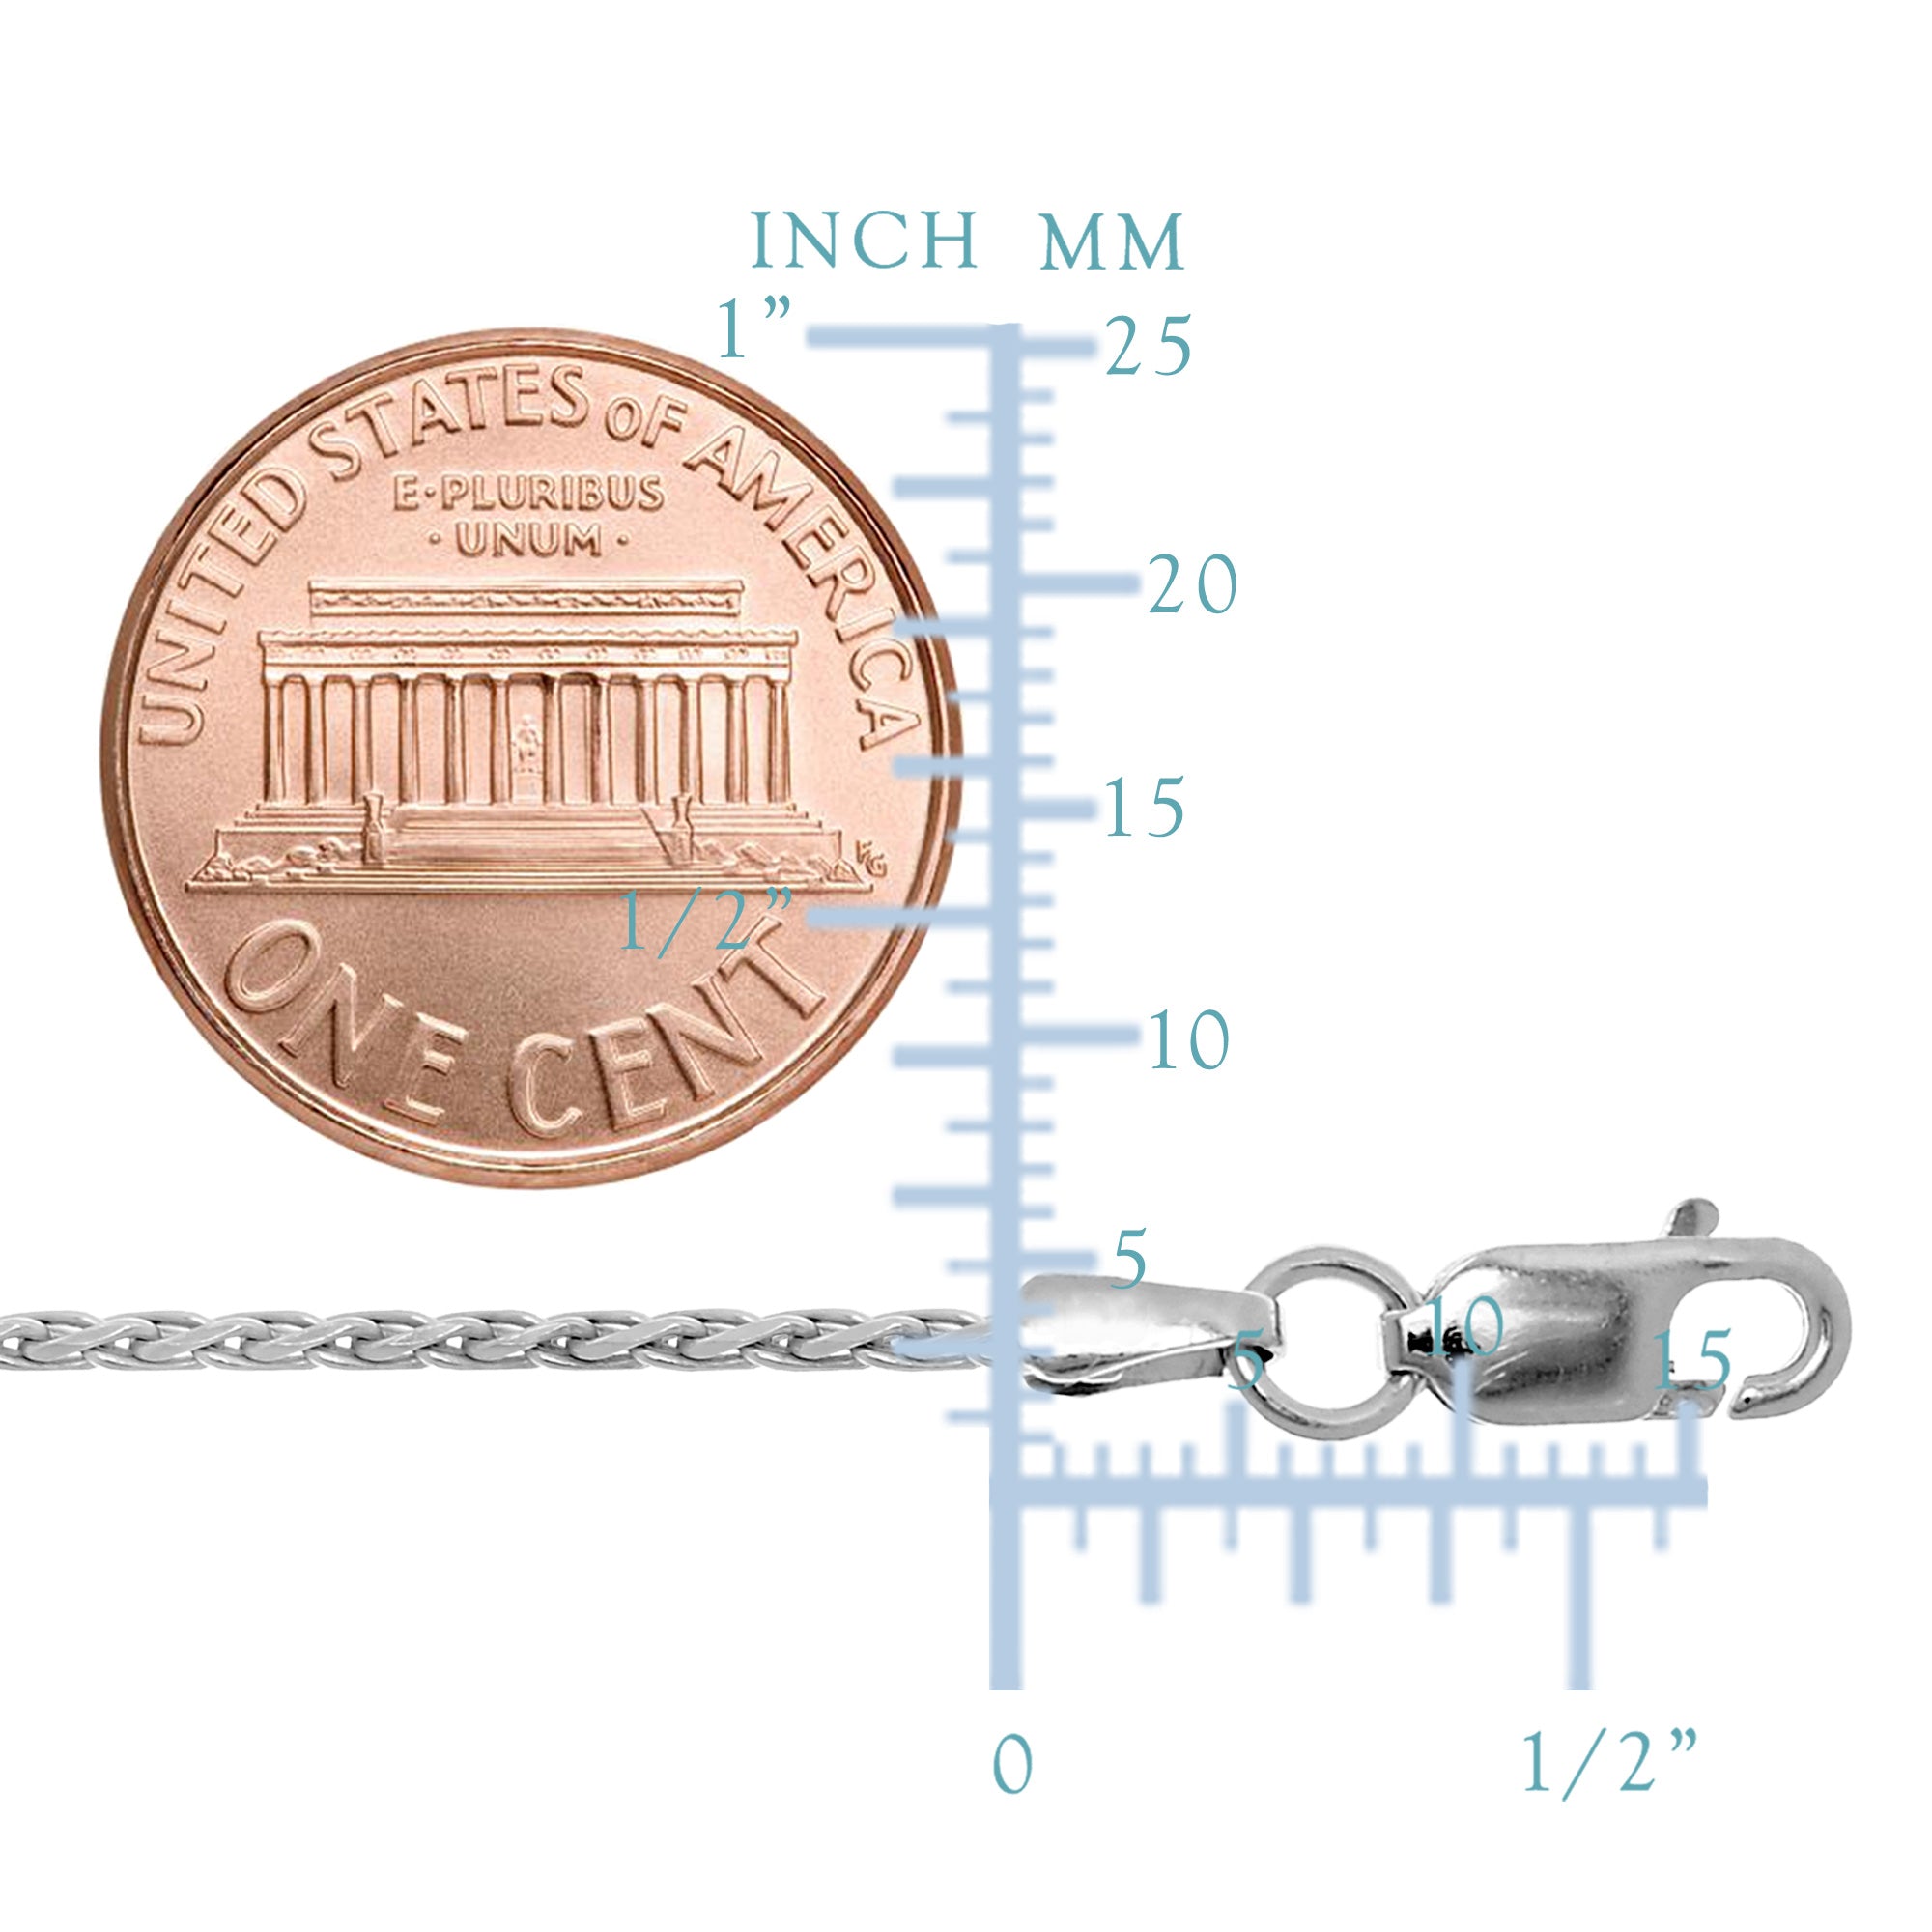 Collier chaîne Spiga en argent sterling plaqué rhodium, bijoux de créateur fins de 1,3 mm pour hommes et femmes